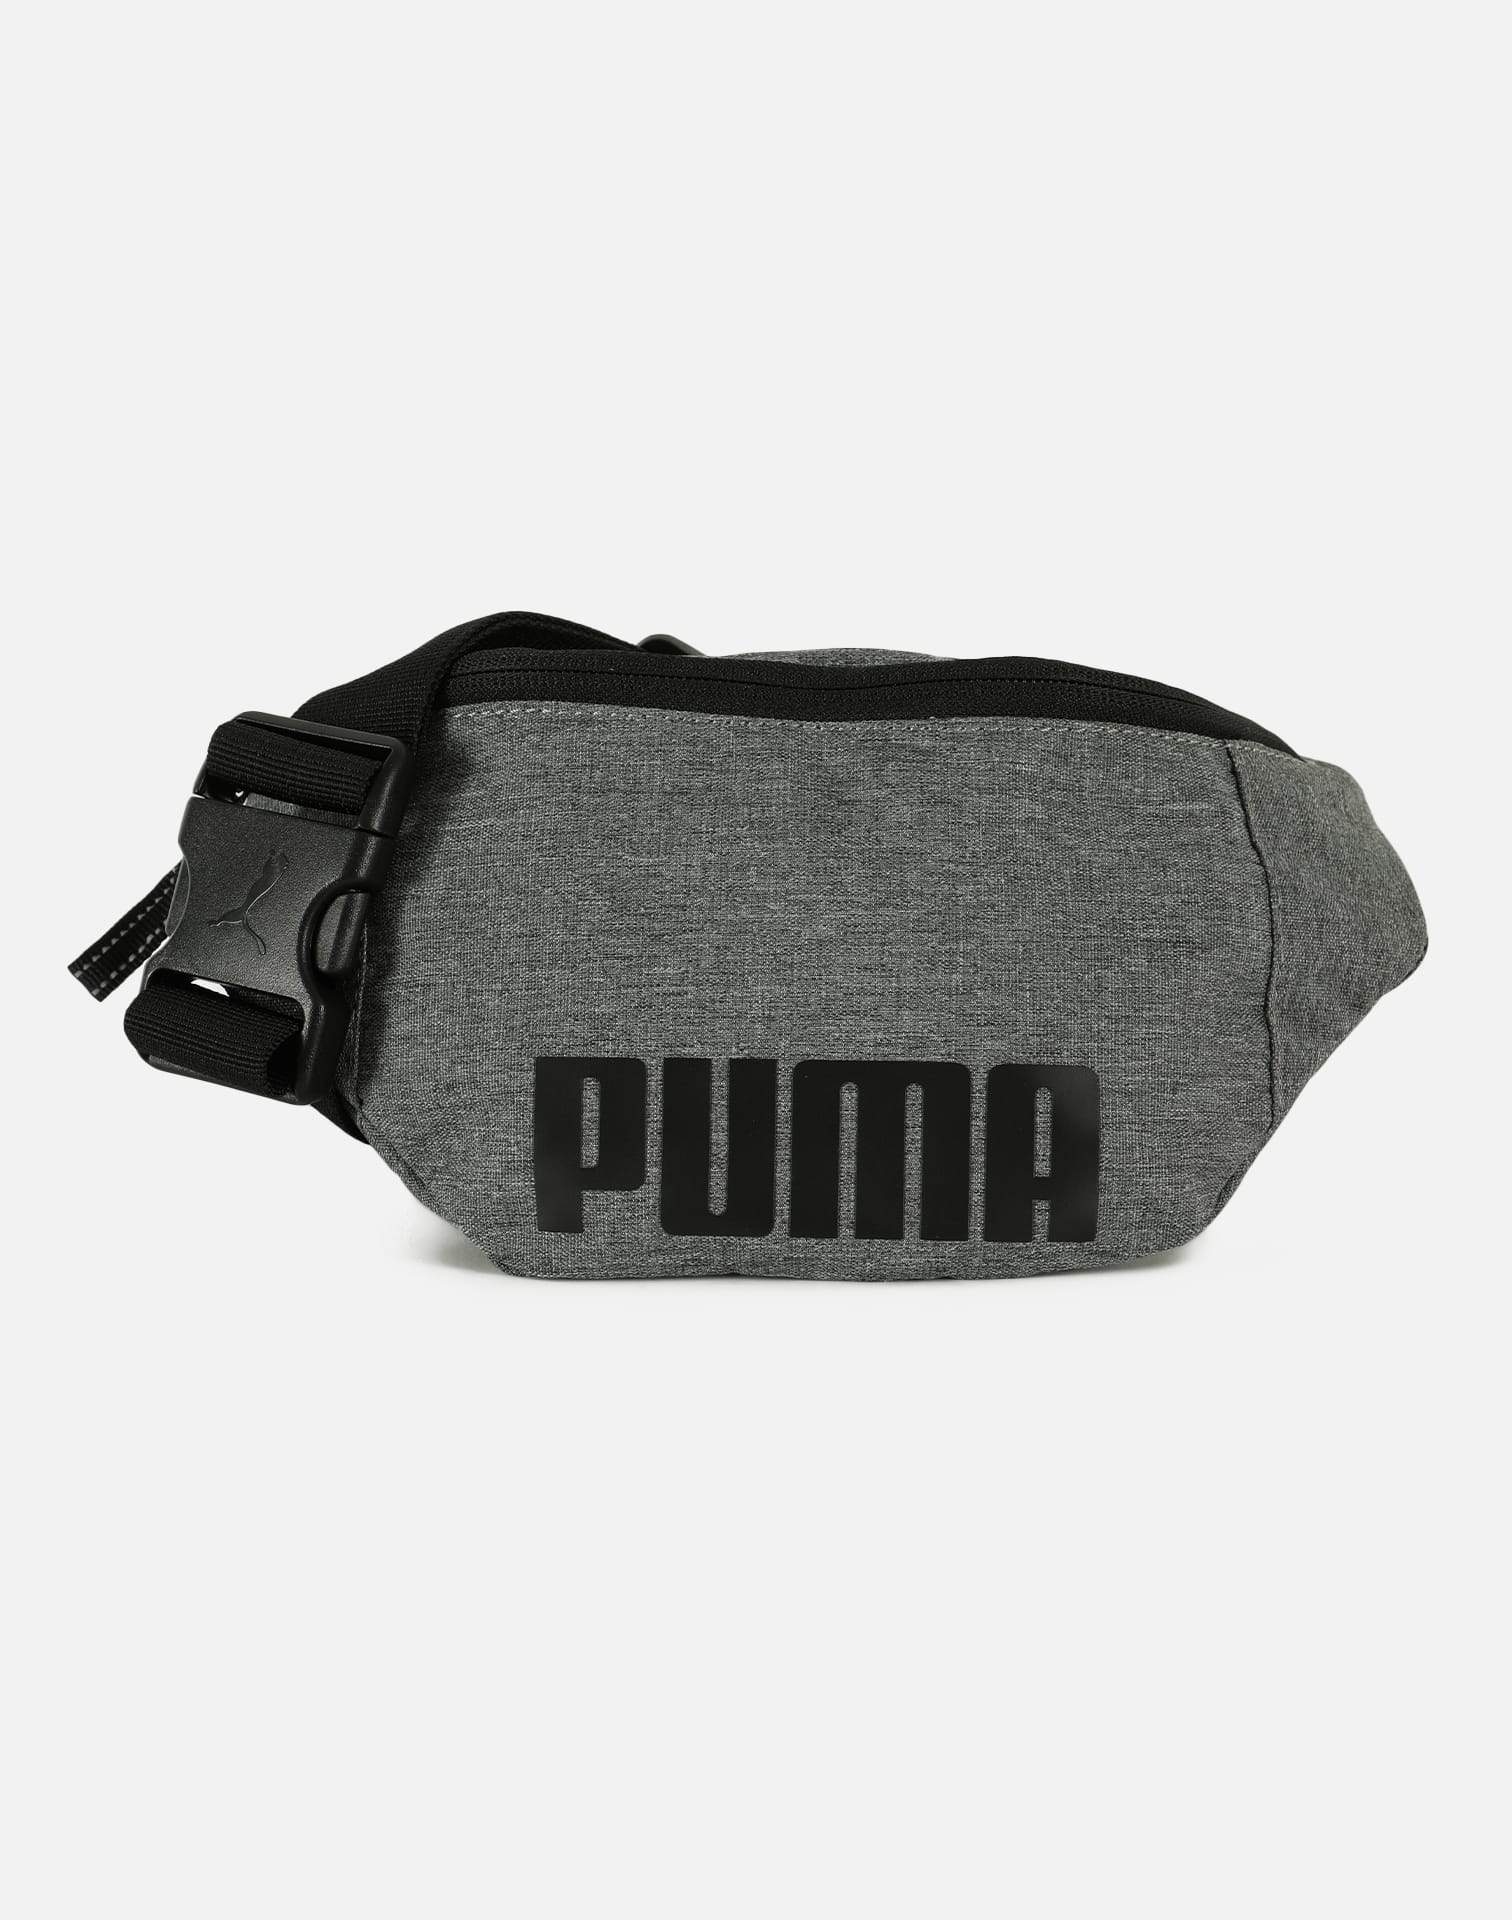 PUMA Forever Waist Bag